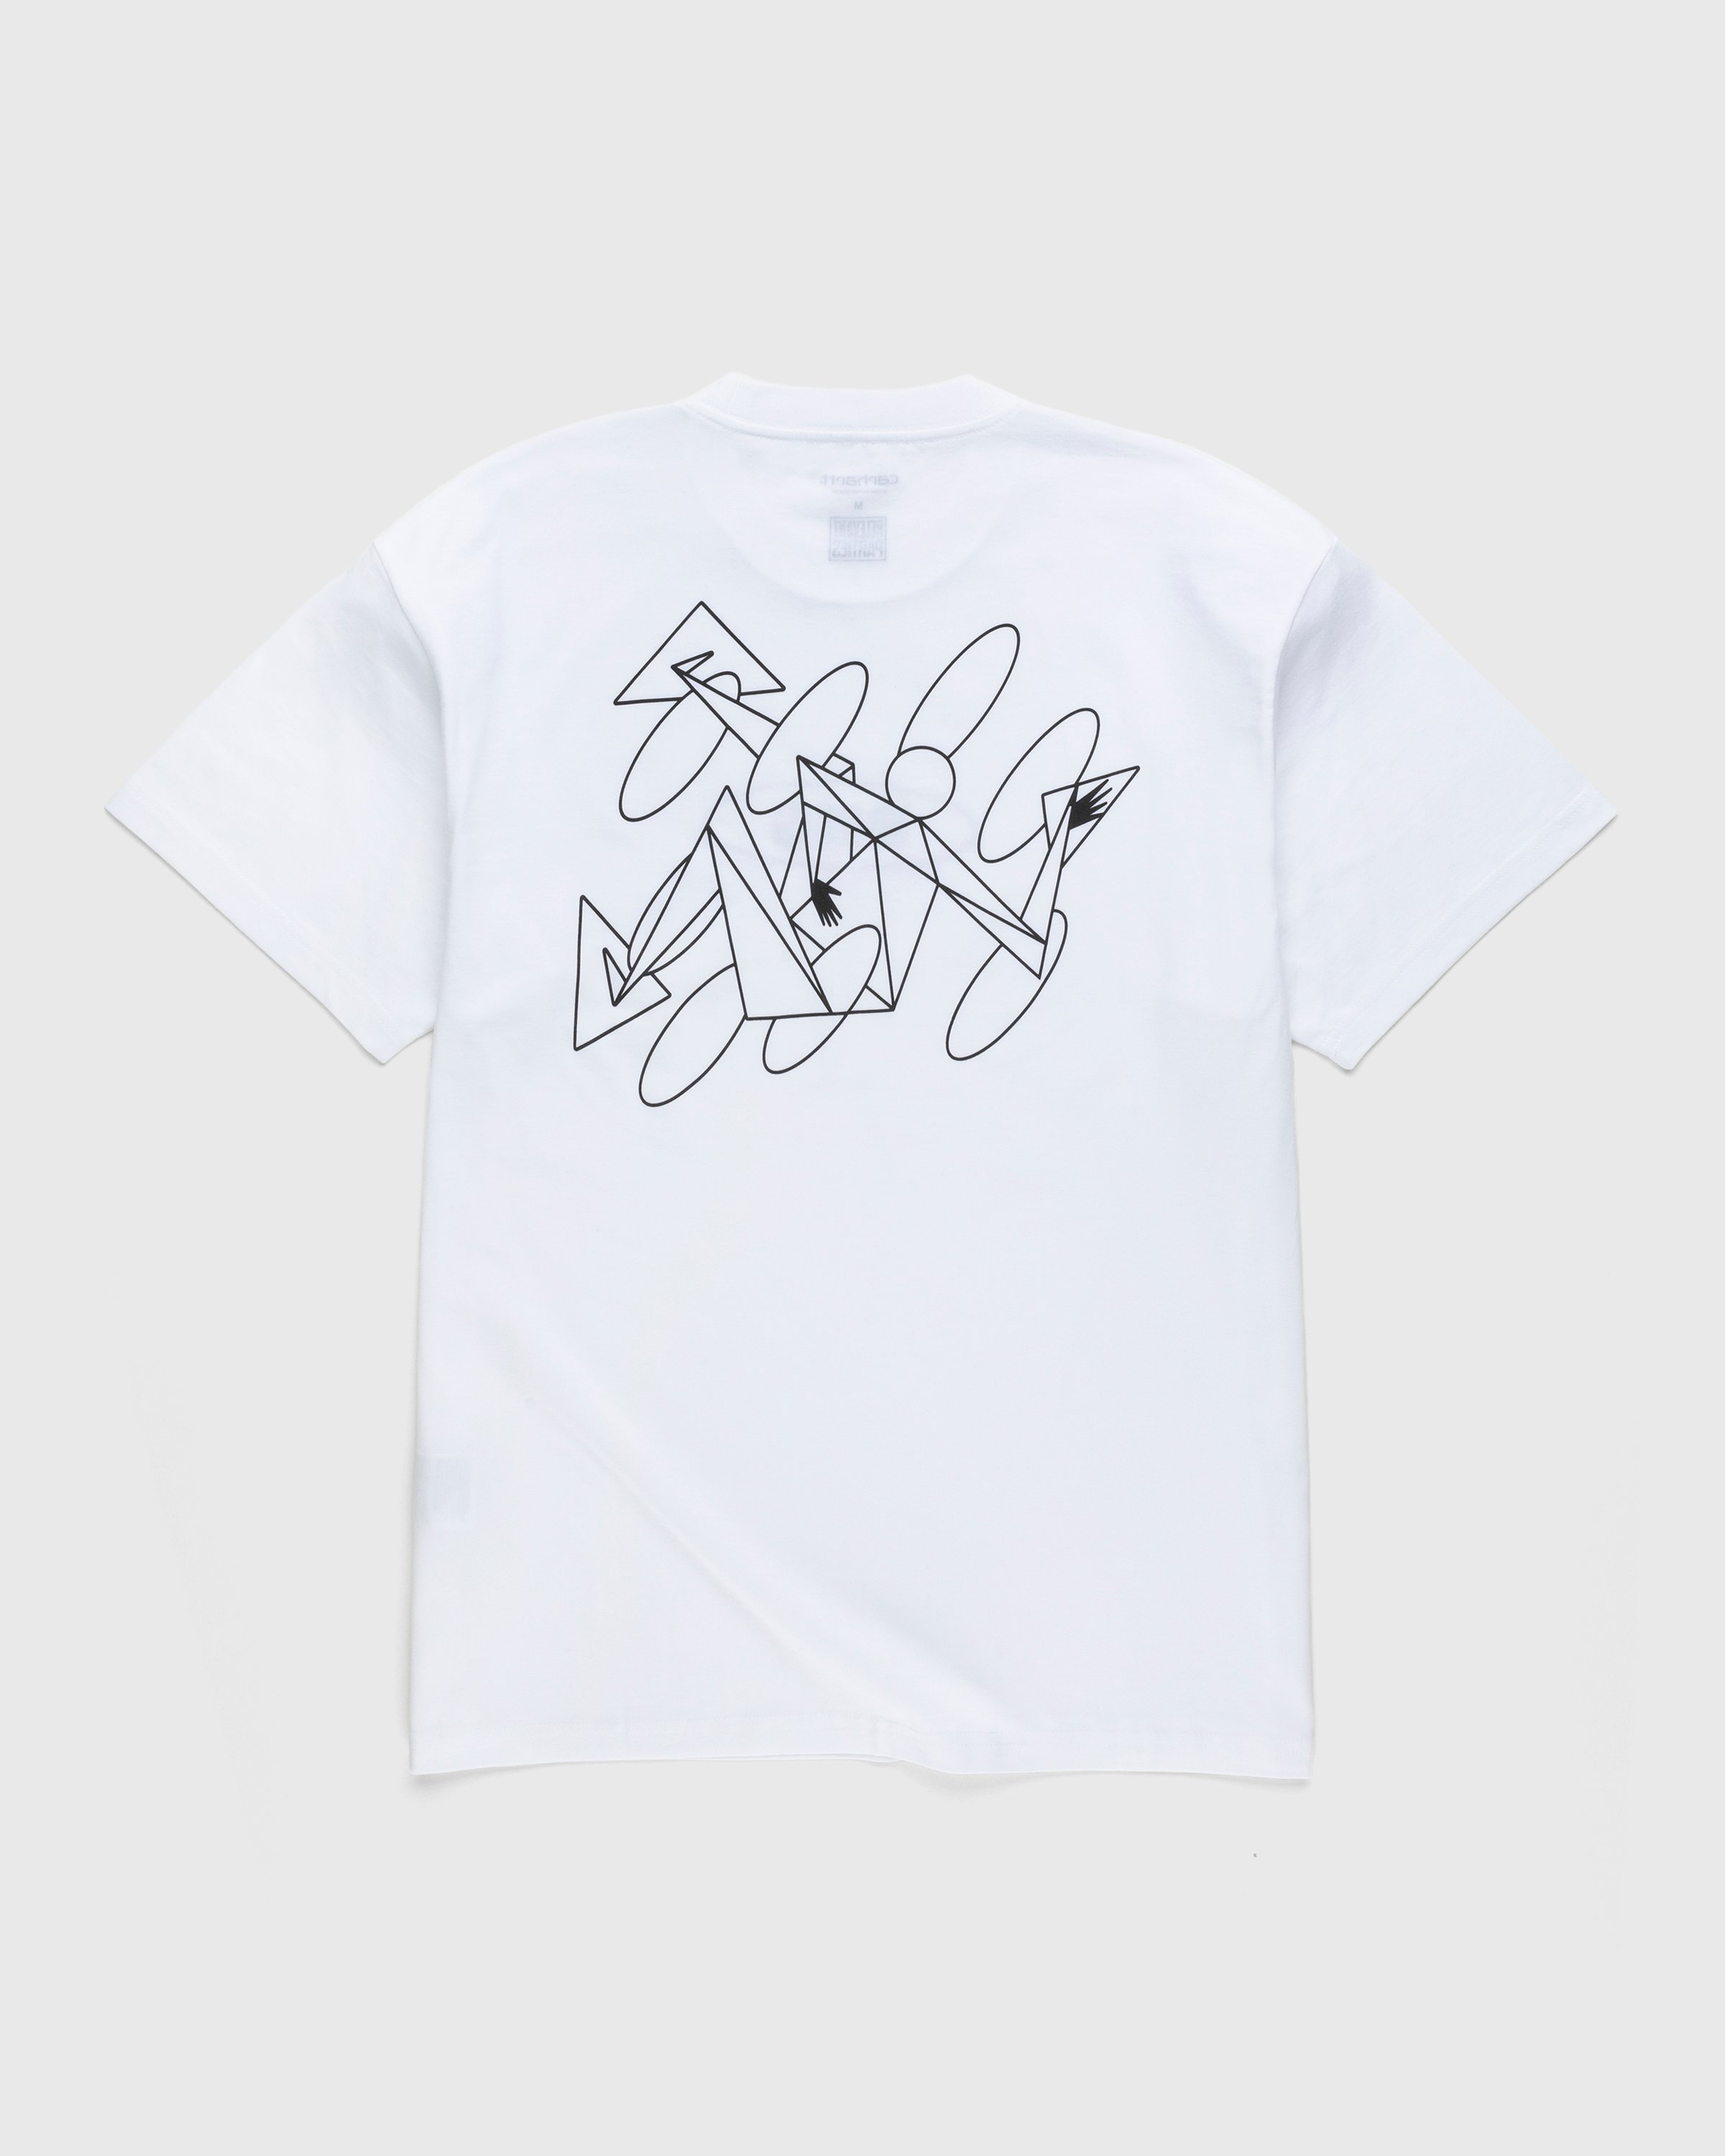 Carhartt WIP - Rush Hour T-Shirt White/Black - Clothing - White - Image 2